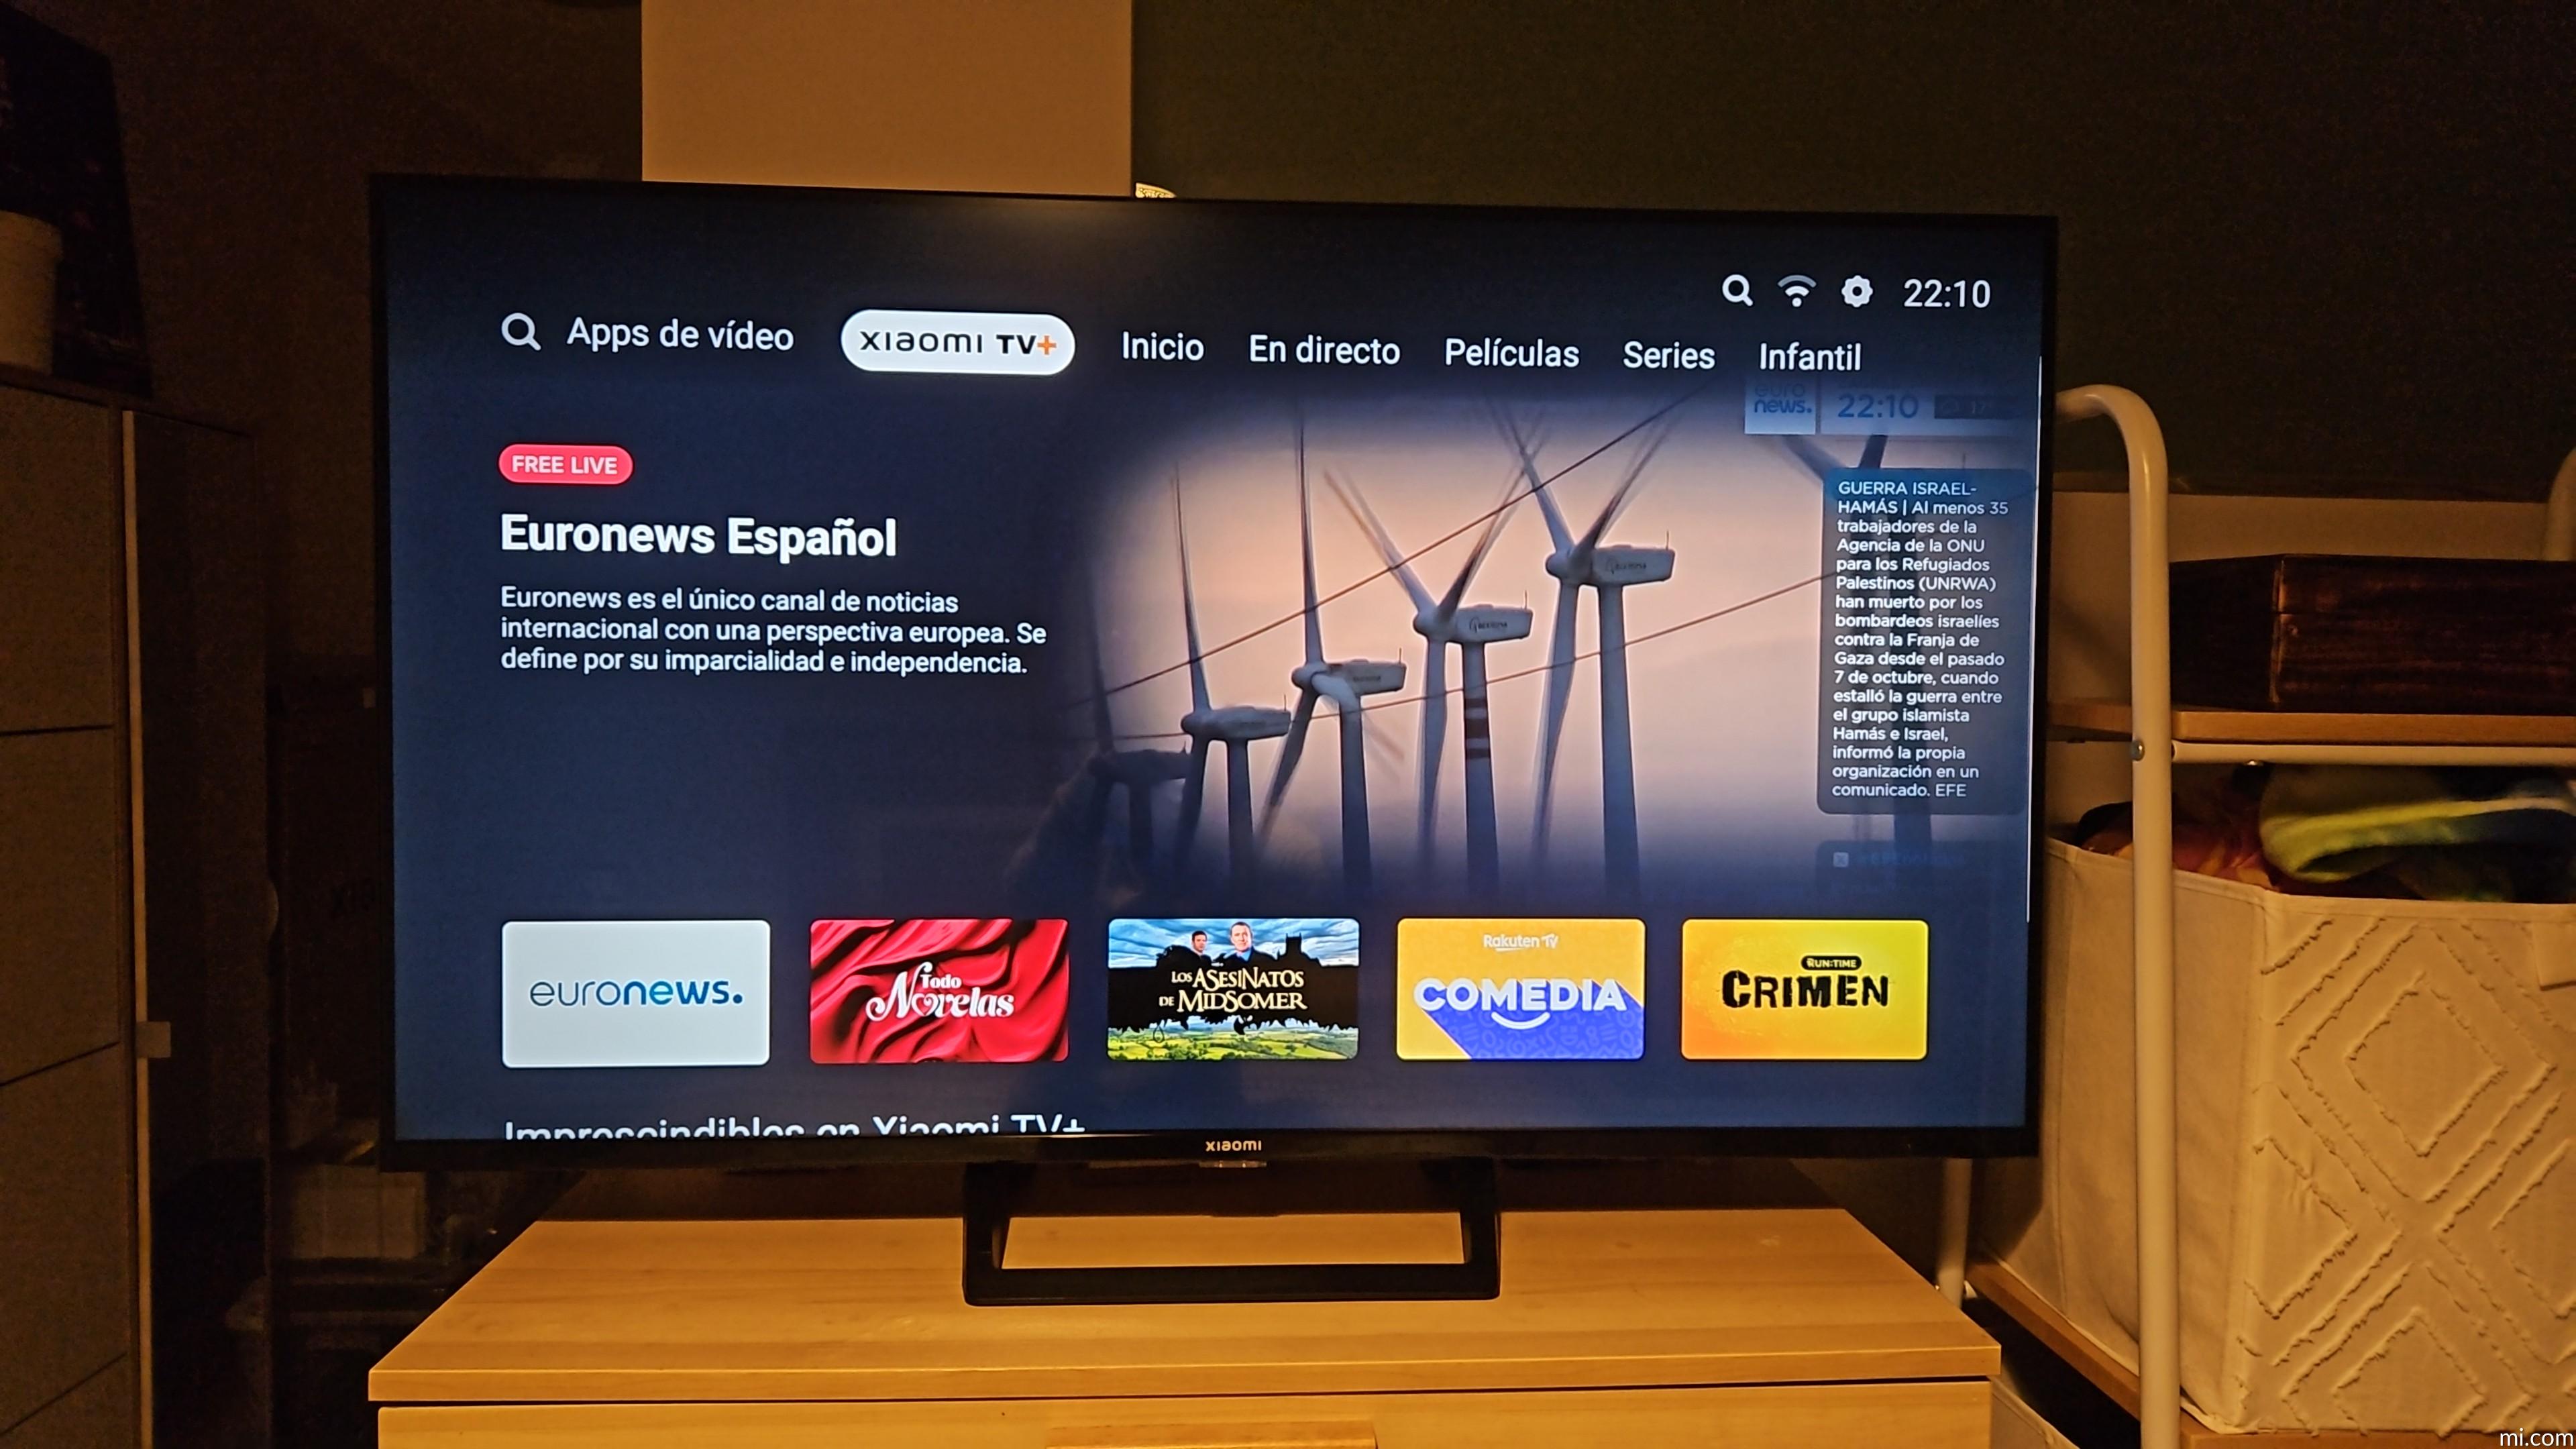 Xiaomi TV A2 43 pulgadas - Xiaomi España